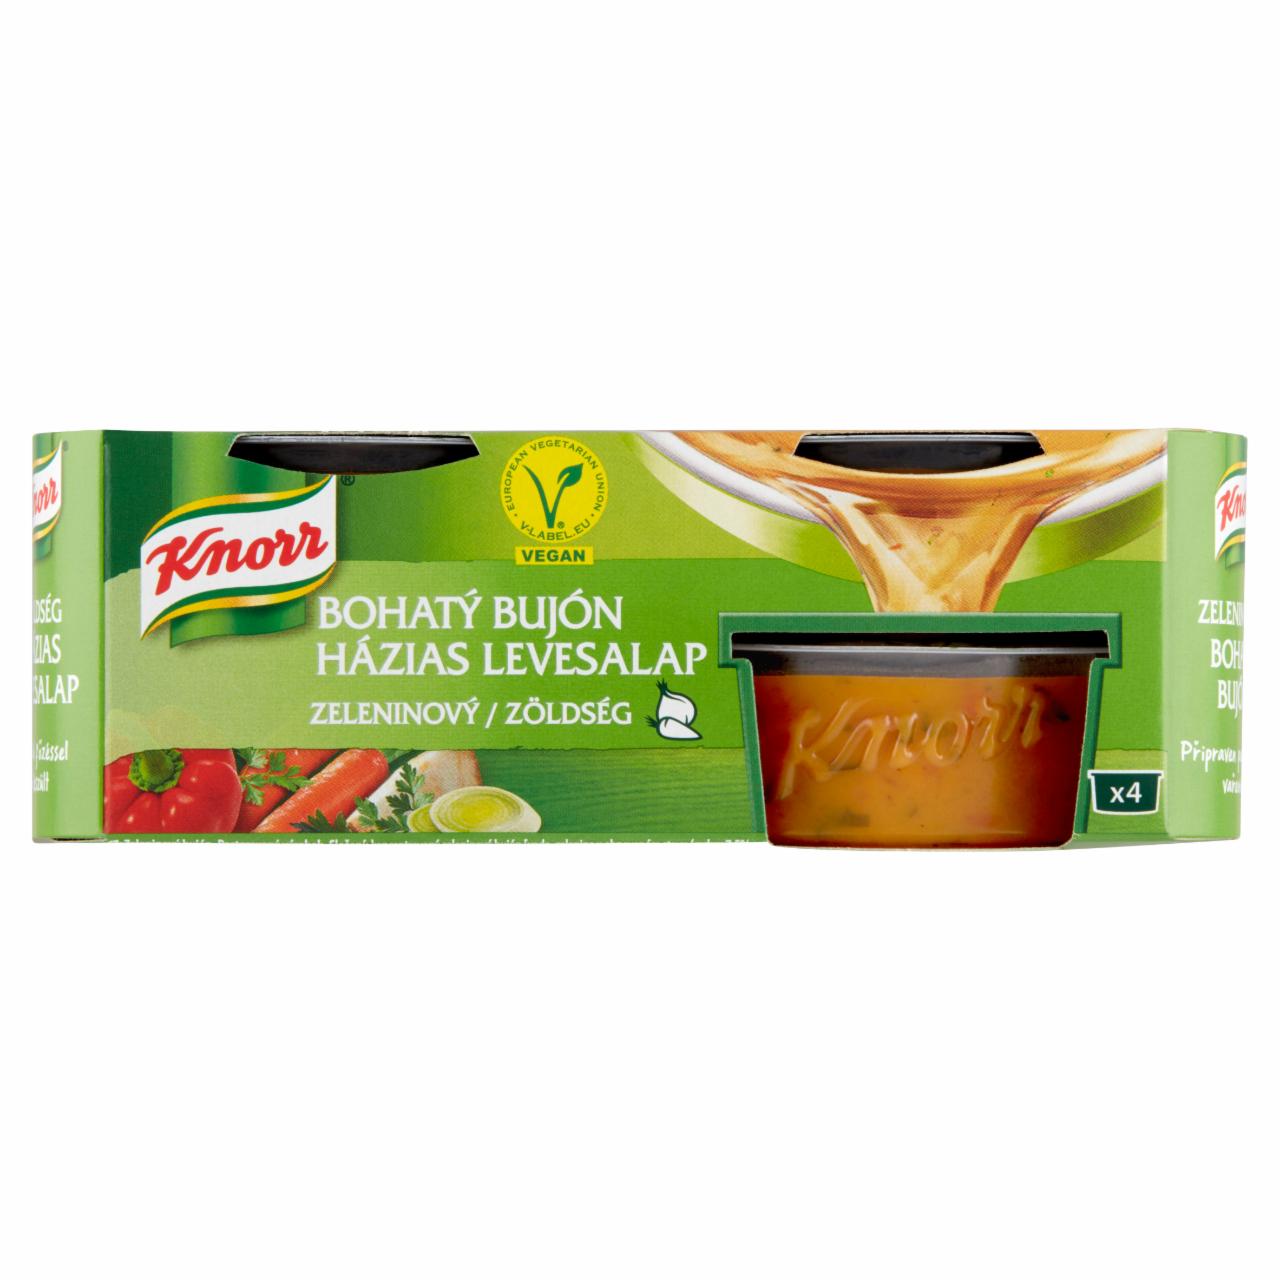 Képek - Knorr házias zöldség levesalap 4 x 28 g (112 g)